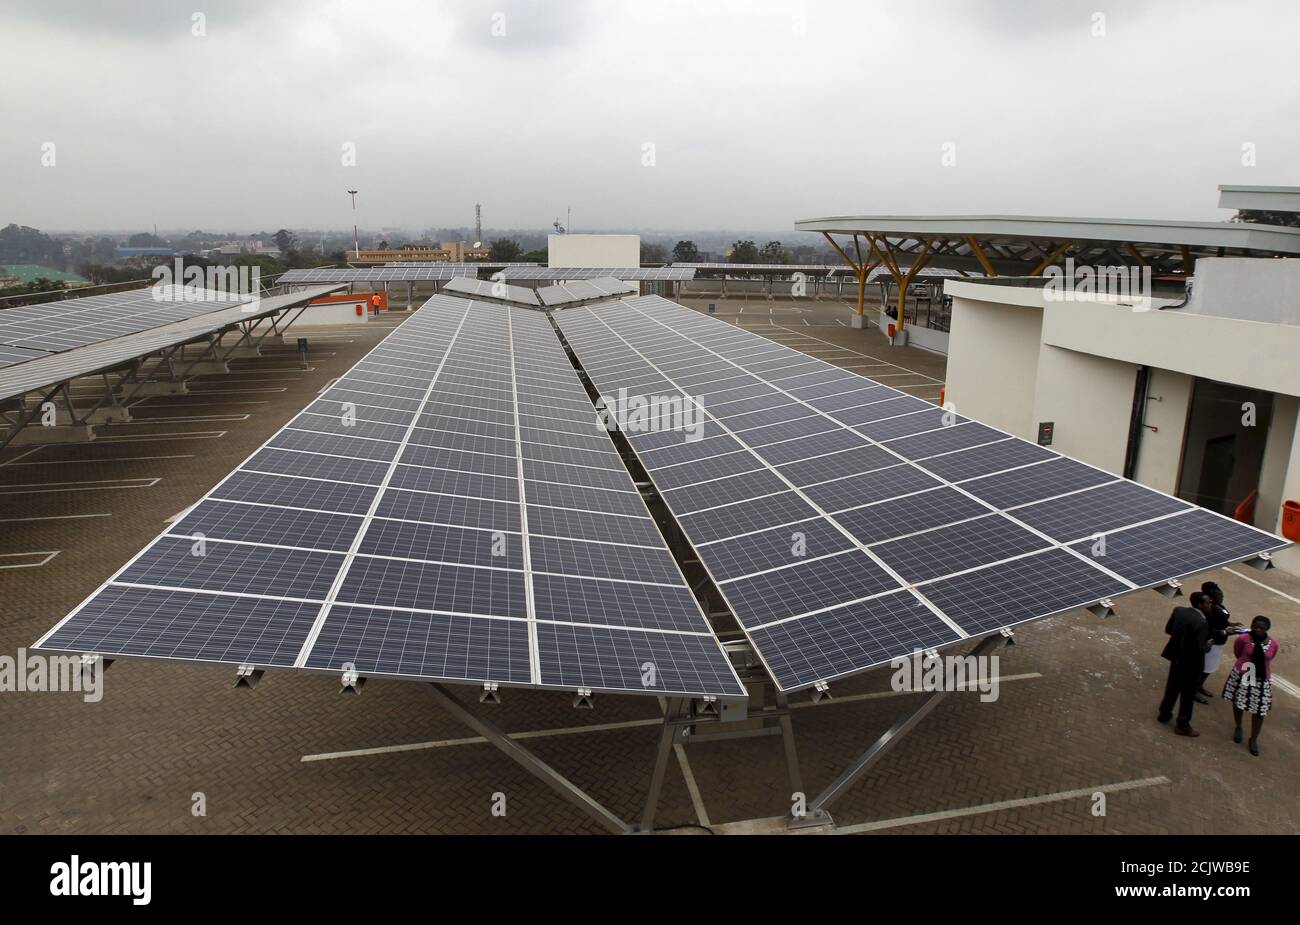 Des panneaux solaires sont photographiés dans un carport solaire du centre commercial Garden City de Nairobi, la capitale du Kenya, le 15 septembre 2015. Selon SolarCentury et Solar Africa, le plus grand portage solaire d'Afrique, avec 3,300 panneaux solaires, générera 1256 MWh par an et permettra de réduire les émissions de carbone d'environ 745 tonnes par an. REUTERS/Thomas Mukoya Banque D'Images